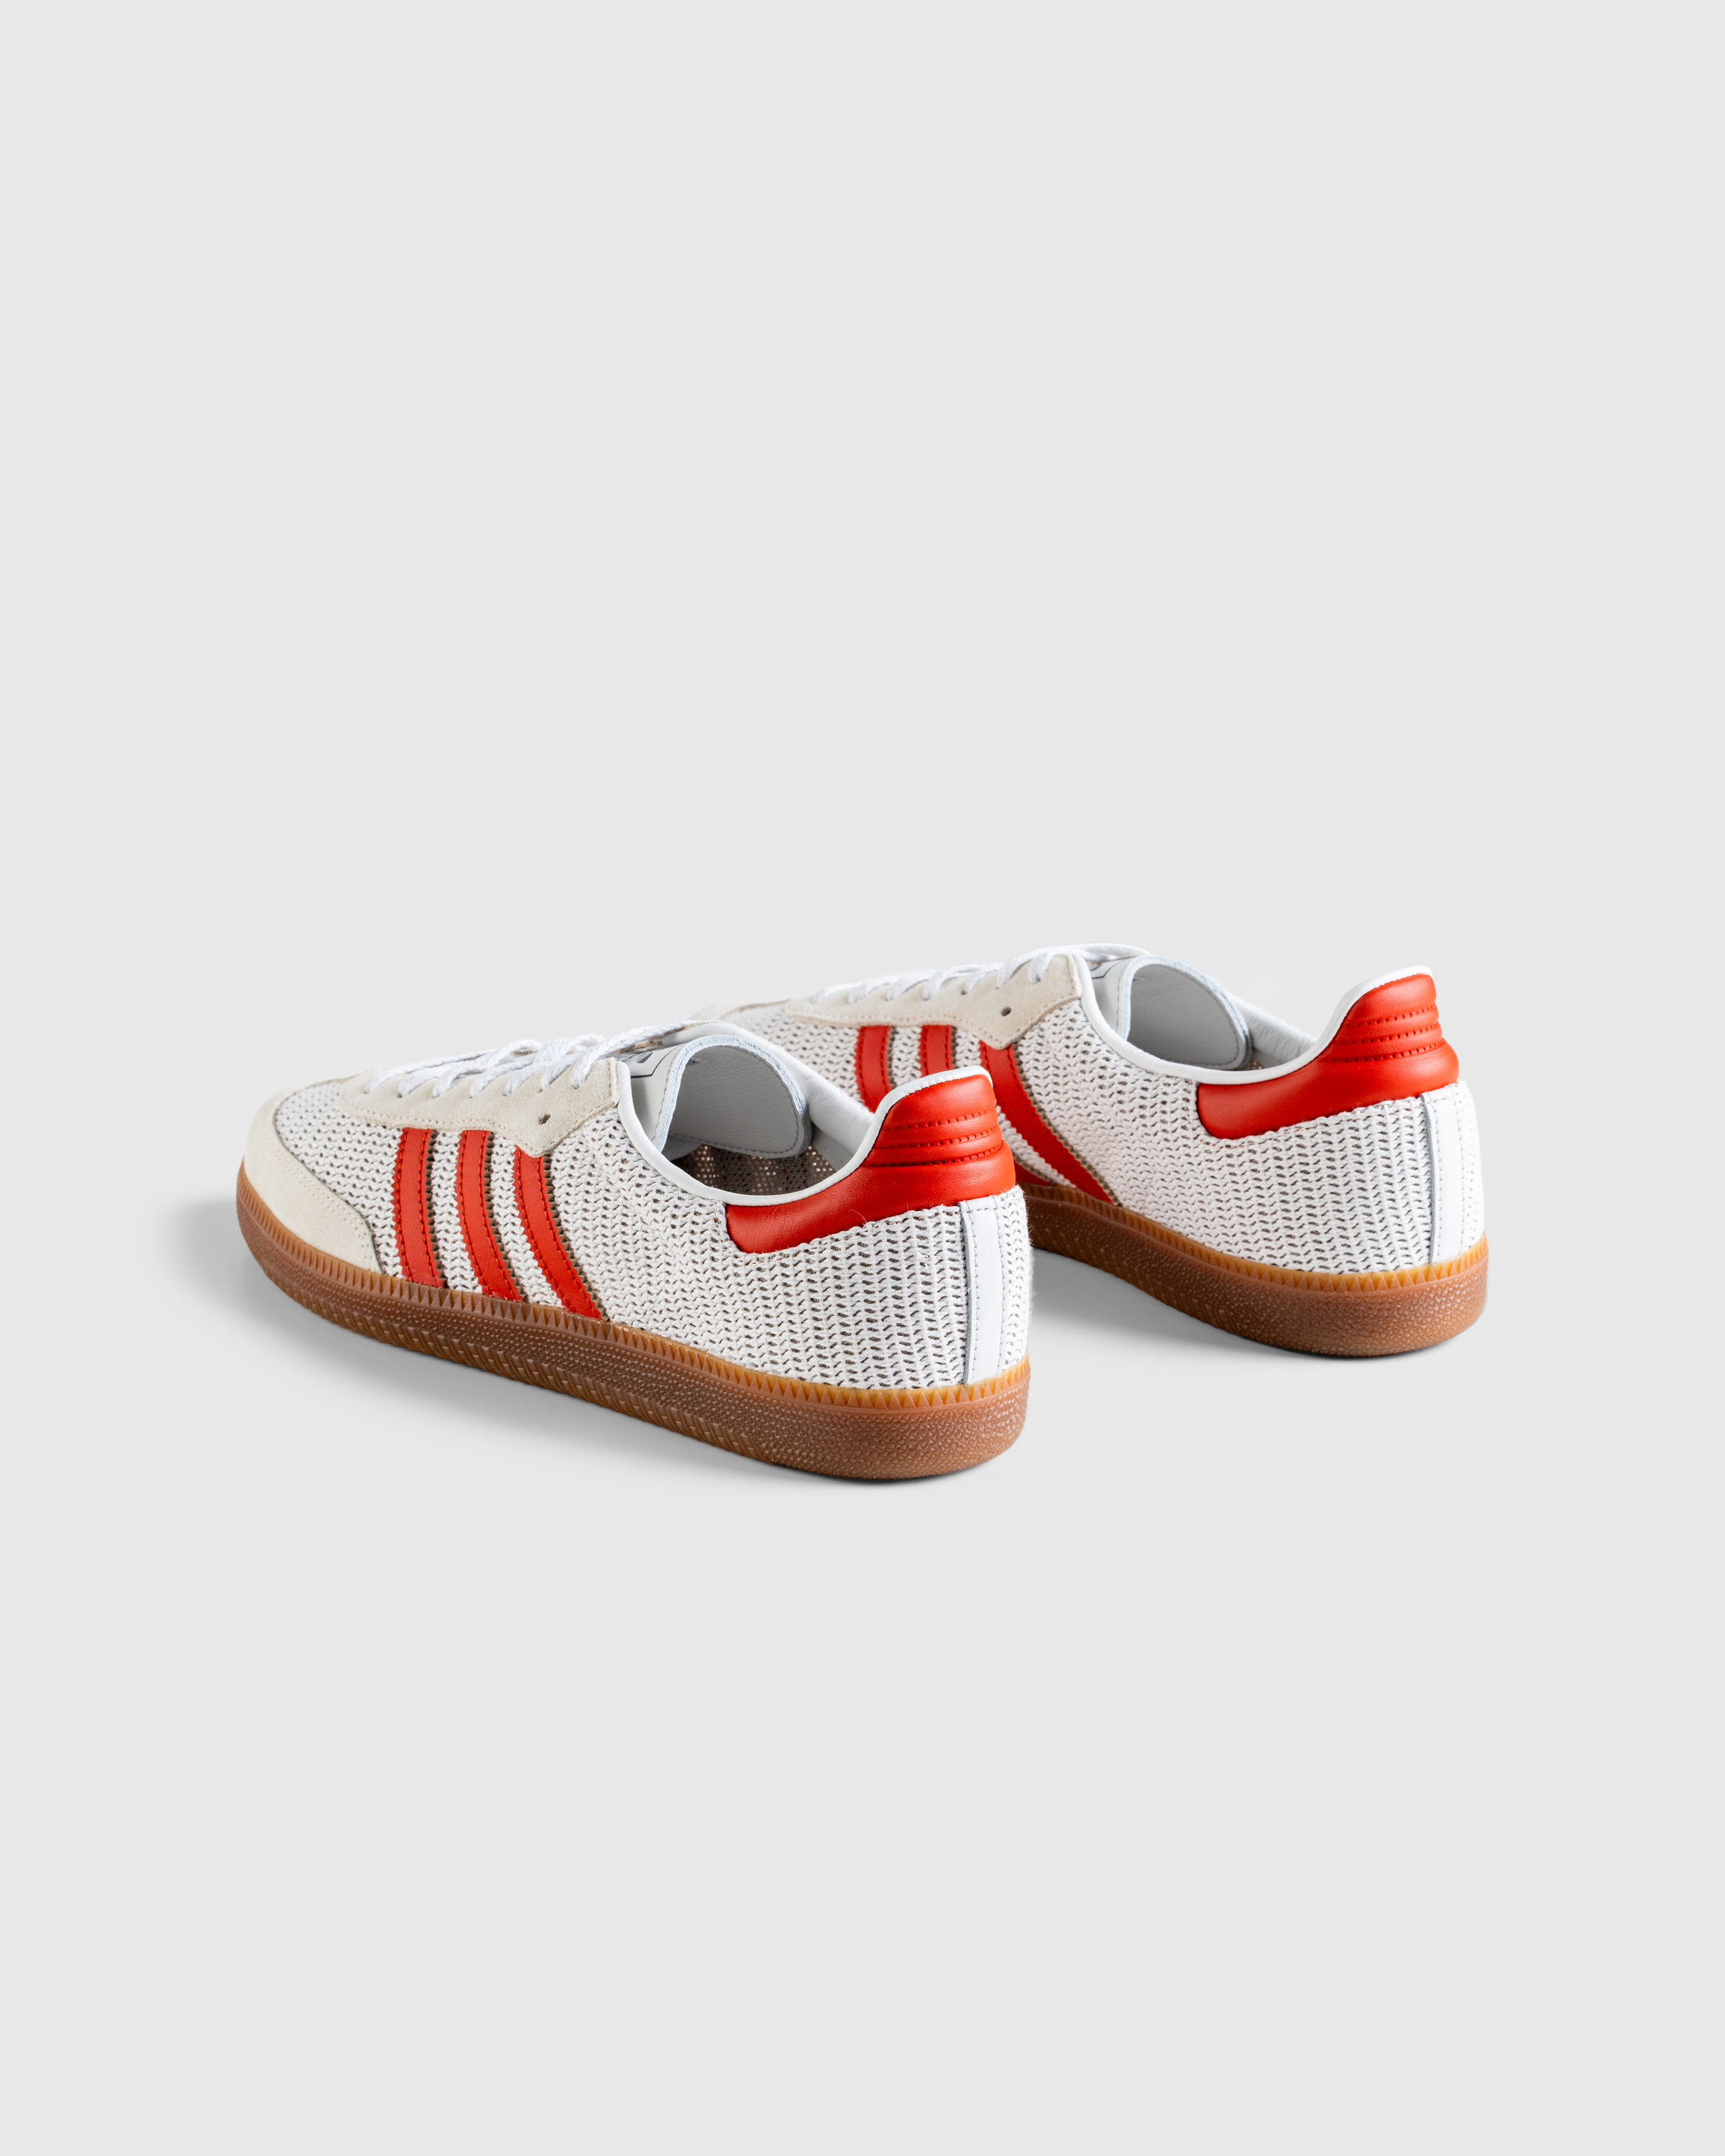 Adidas – Samba OG Crystal White - Sneakers - White - Image 4